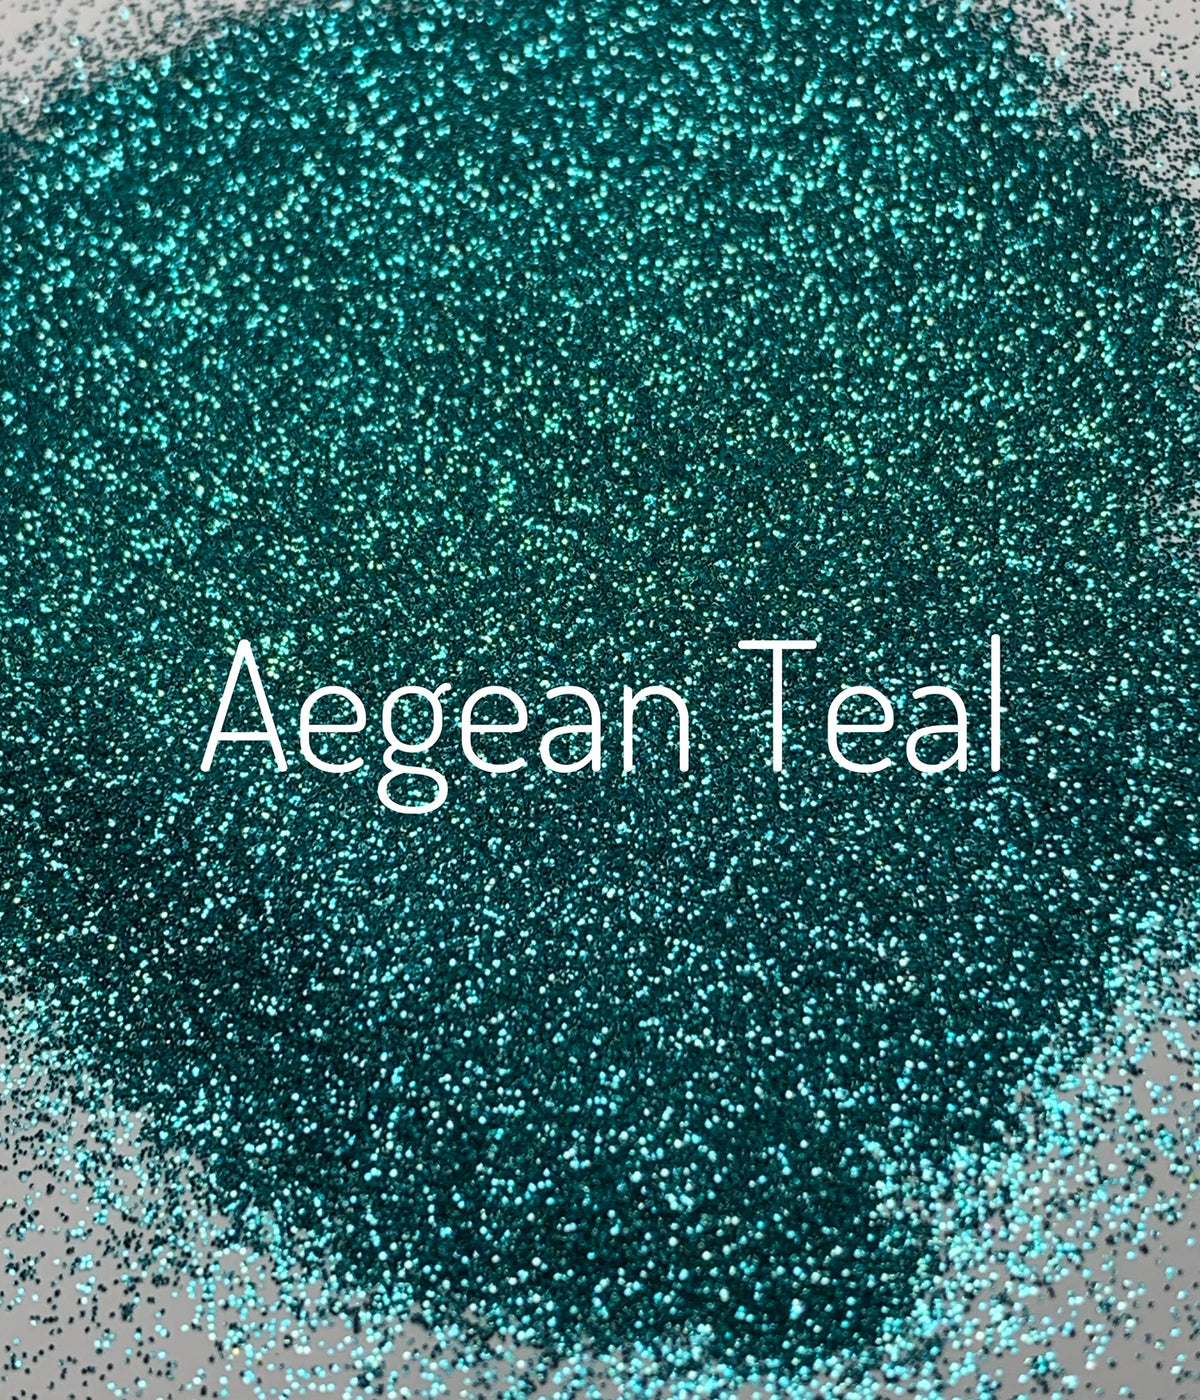 Aegean Teal